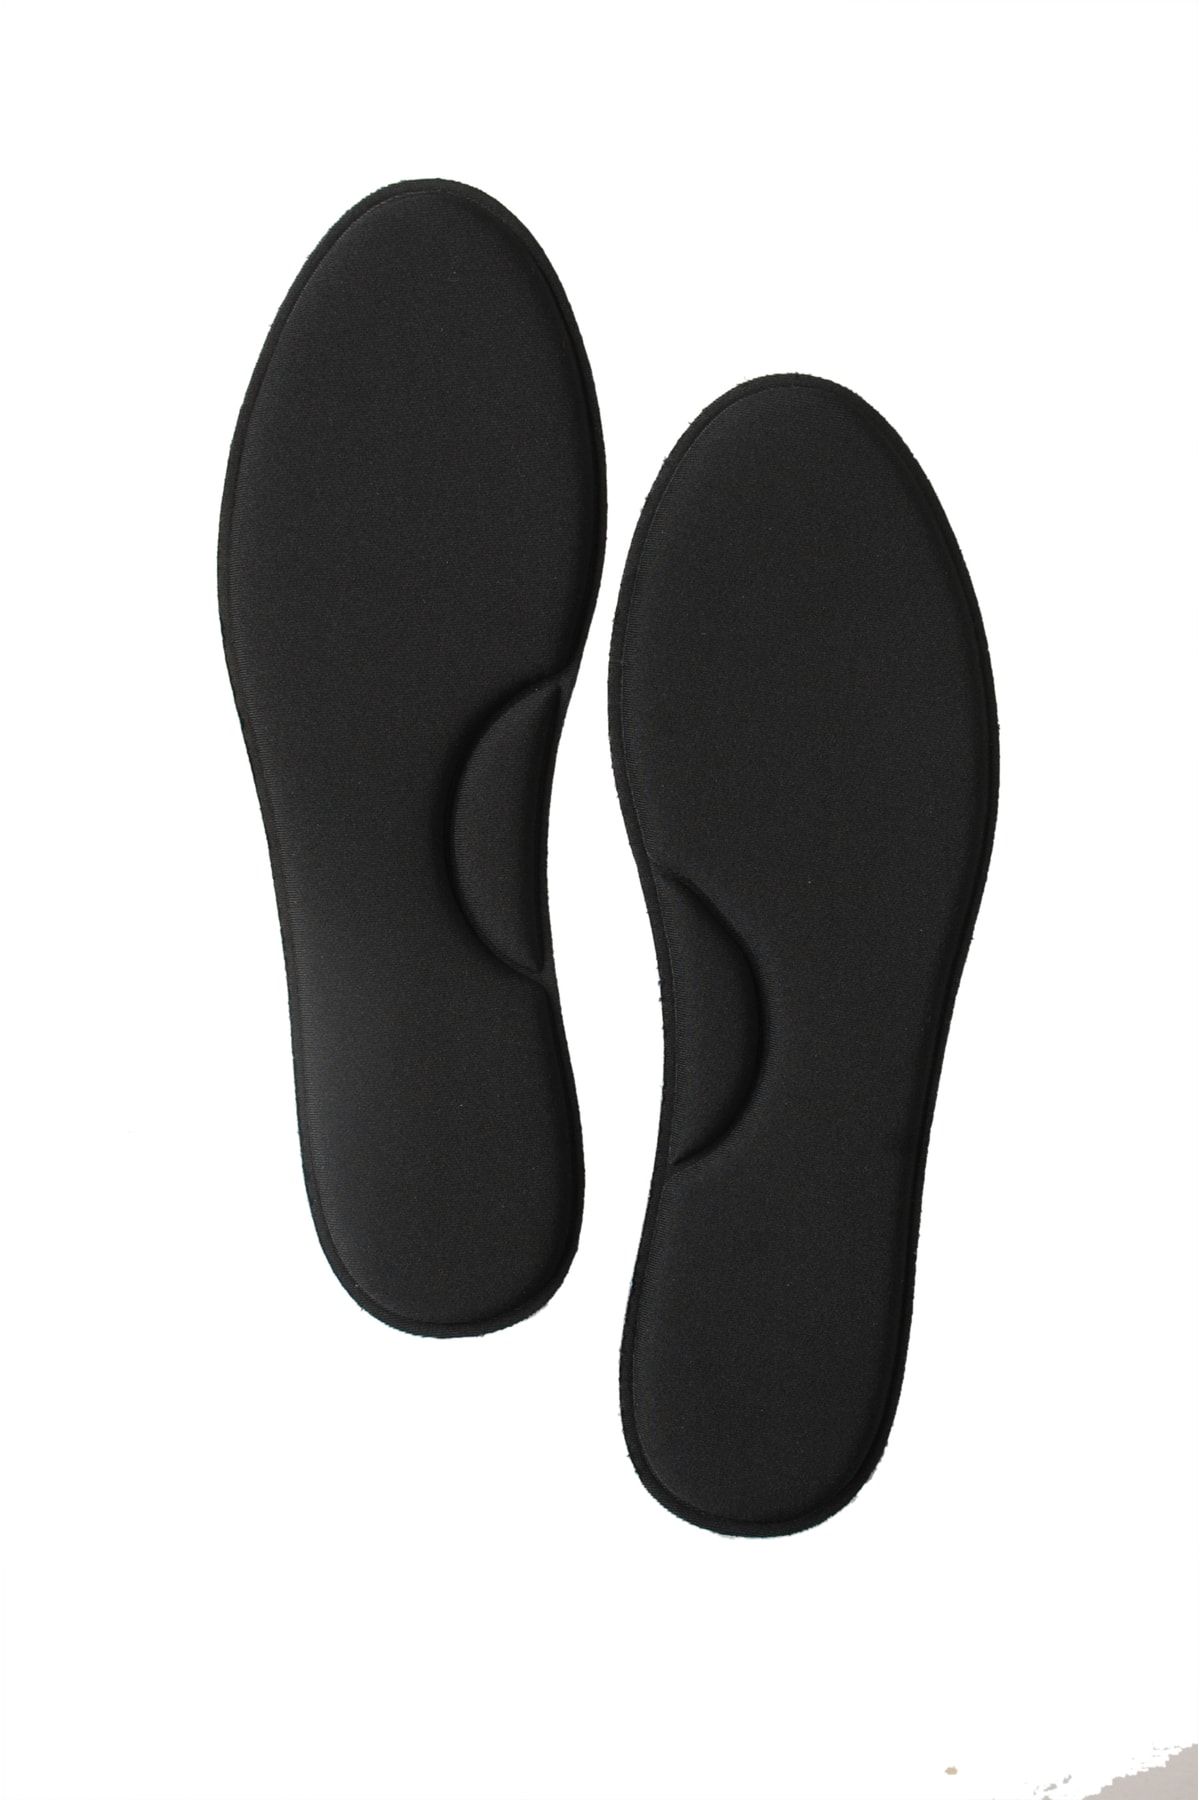 Black Vein Memory Foam Yumuşak Ayakkabı Tabanlığı, Akıllı Hafızalı Spor Tabanlık, Ayakkabı Iç Tabanı